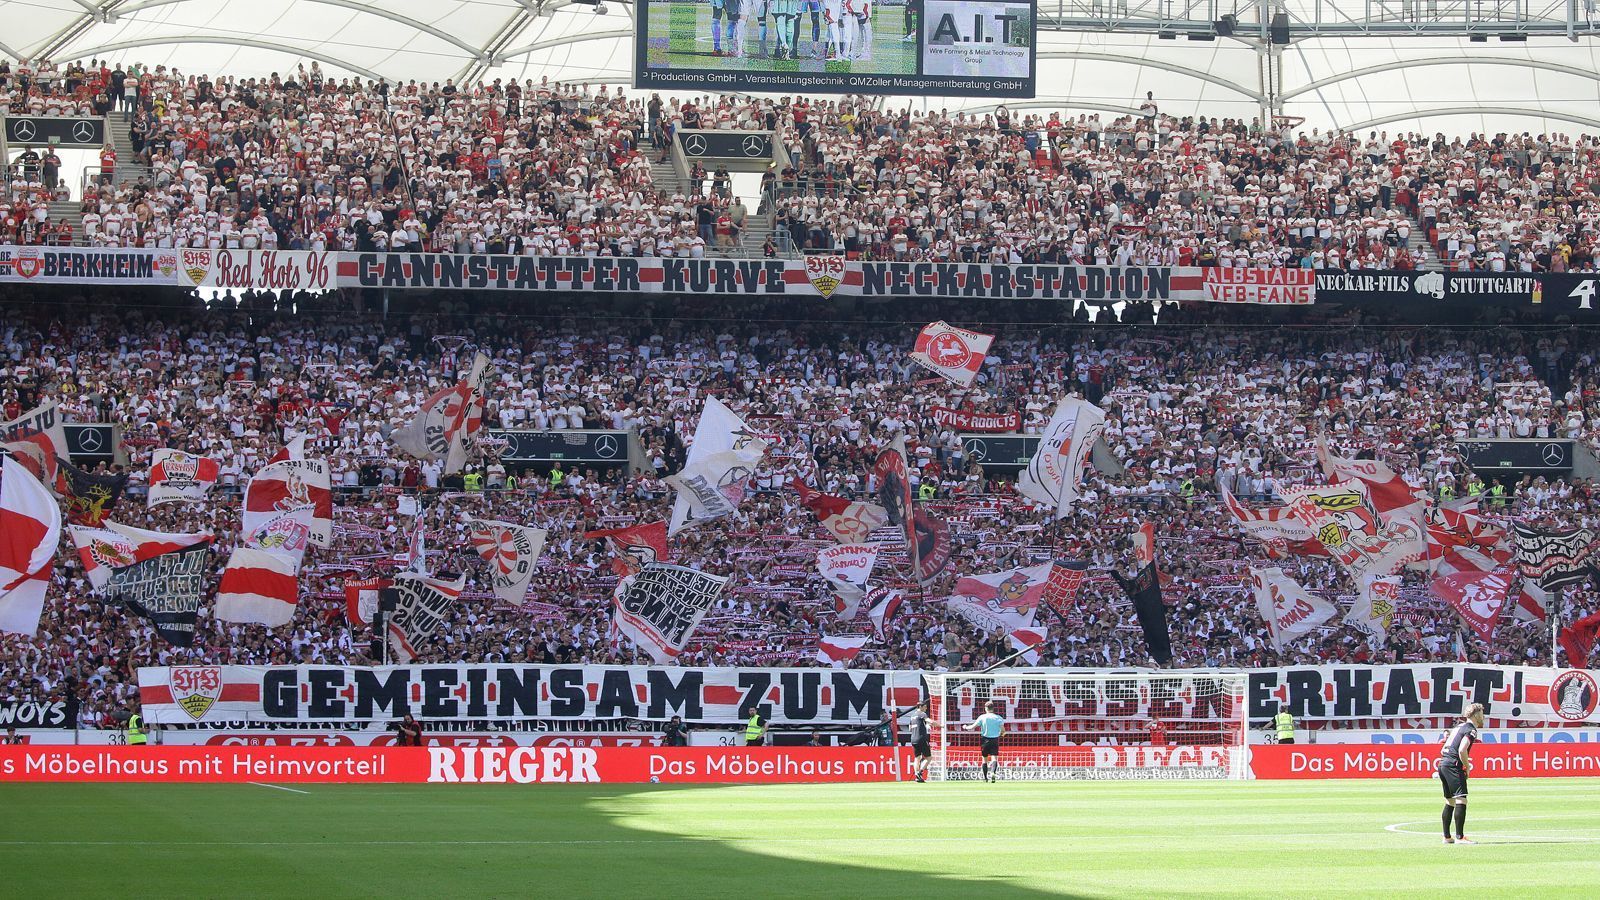 
                <strong>Platz 6: VfB Stuttgart</strong><br>
                &#x2022; Verkaufte Dauerkarten: 28.000<br>&#x2022; Angebotene Dauerkarten: Unbegrenzte Anzahl (Verkauf gestoppt)<br>
              